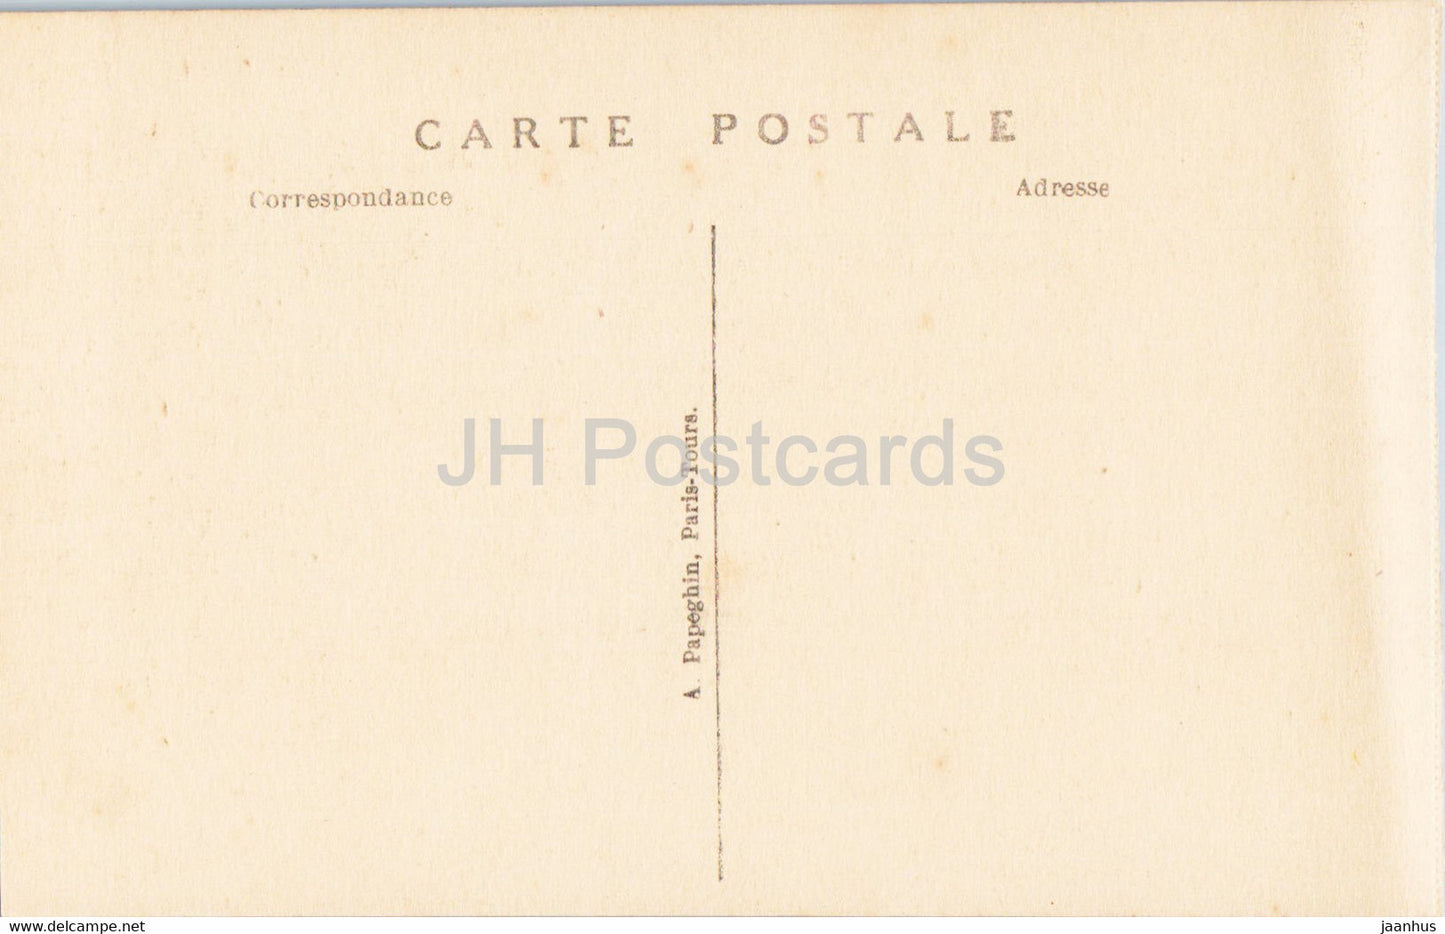 Versailles - Le Chateau - Interieur de la Chapelle - 11 - old postcard - France - unused